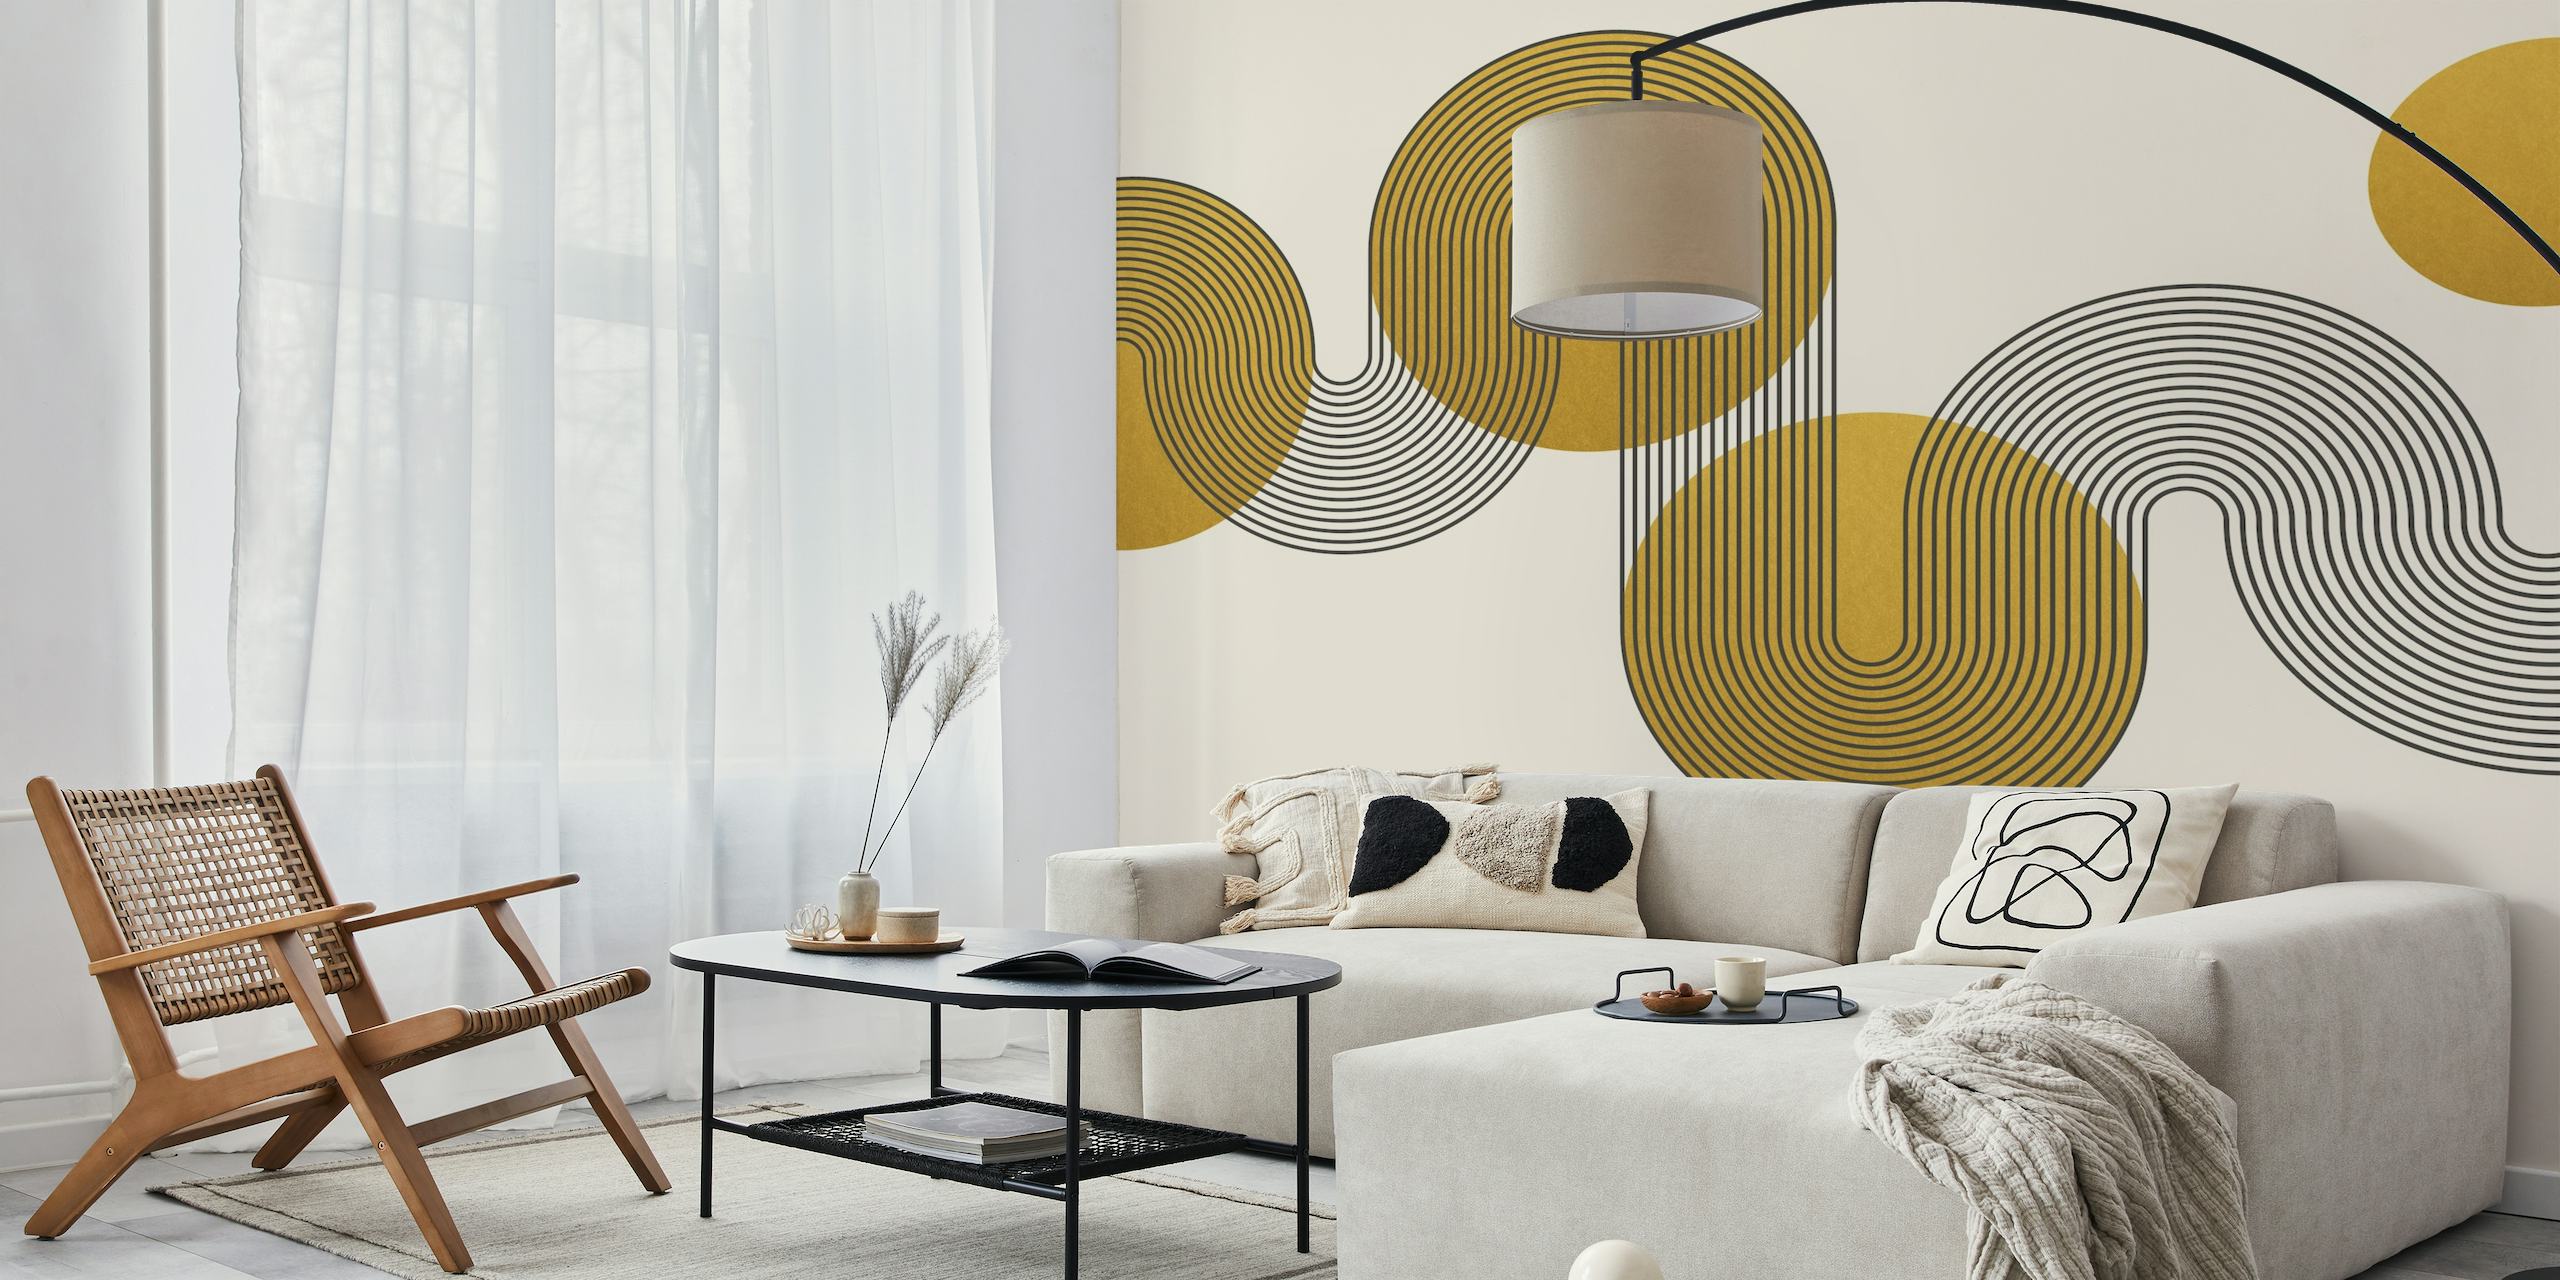 Kurvede Bauhaus-inspirerte gylne sirkler på et nøytralt bakgrunnsmaleri